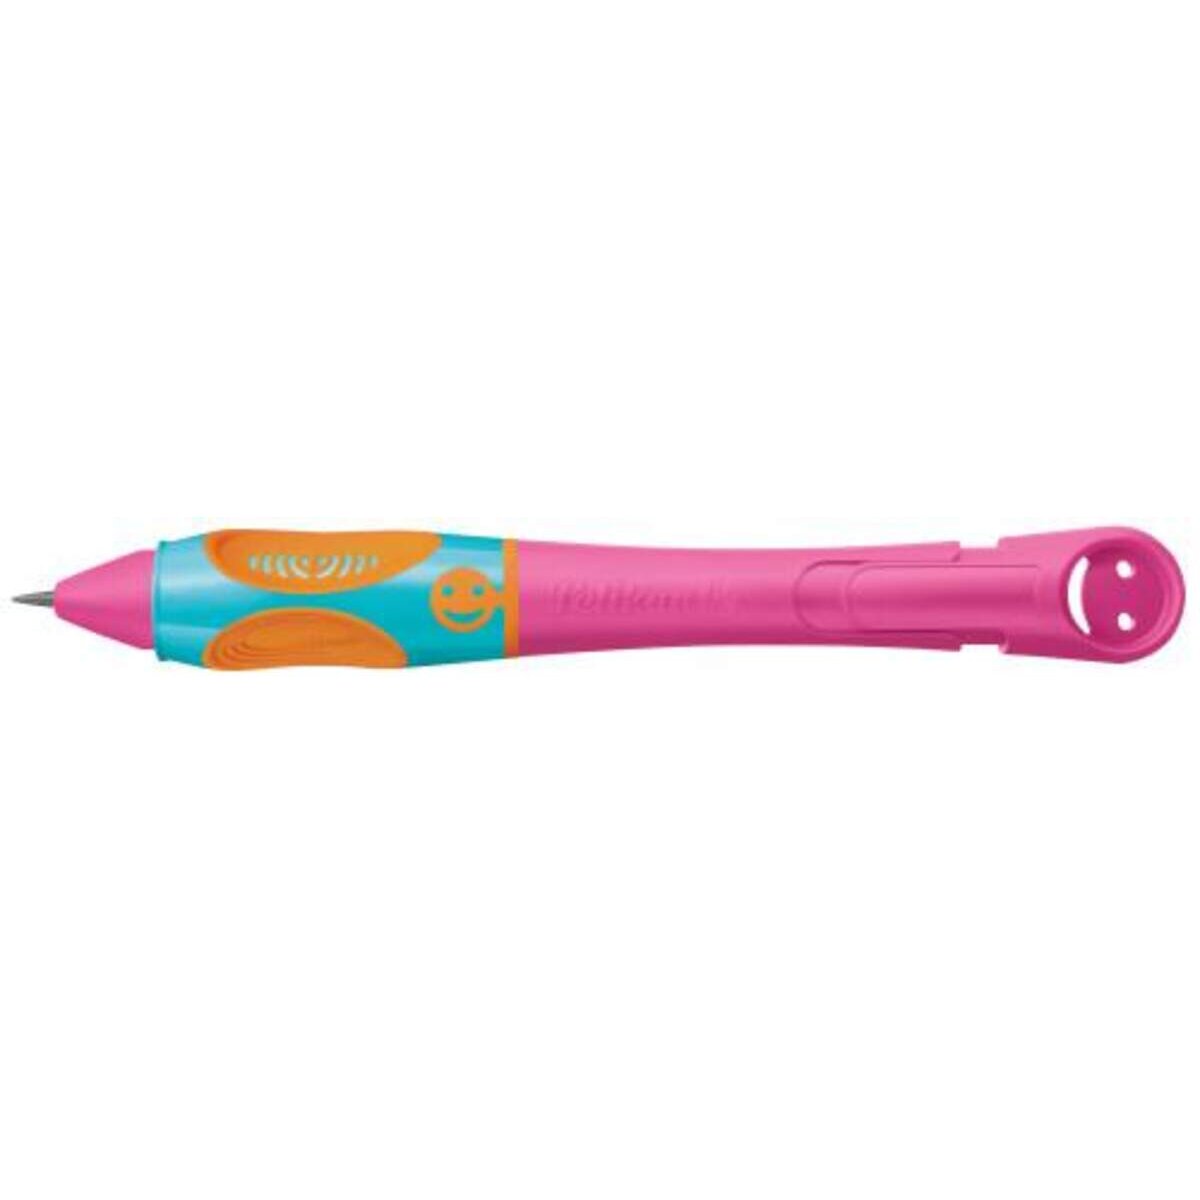 Pelikan griffix® Bleistift für Rechtshänder, Lovely Pink